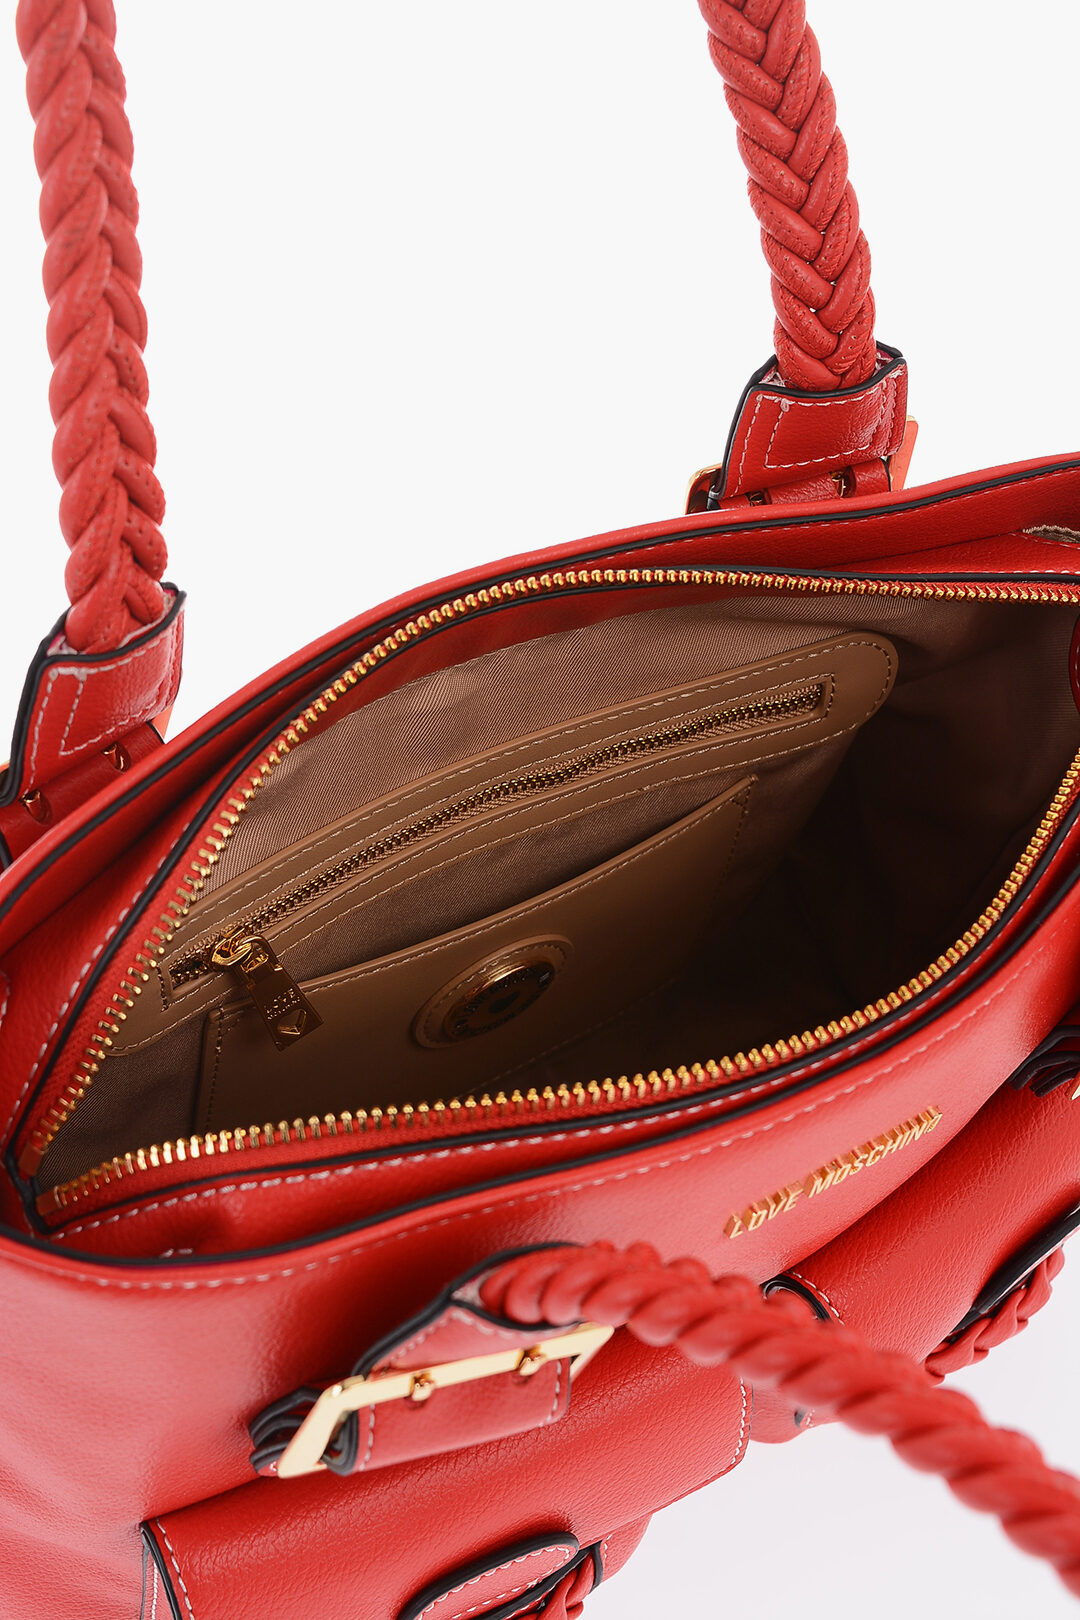 PU Leather Braided Handbag Shoulder Bag Strap Bag Handle